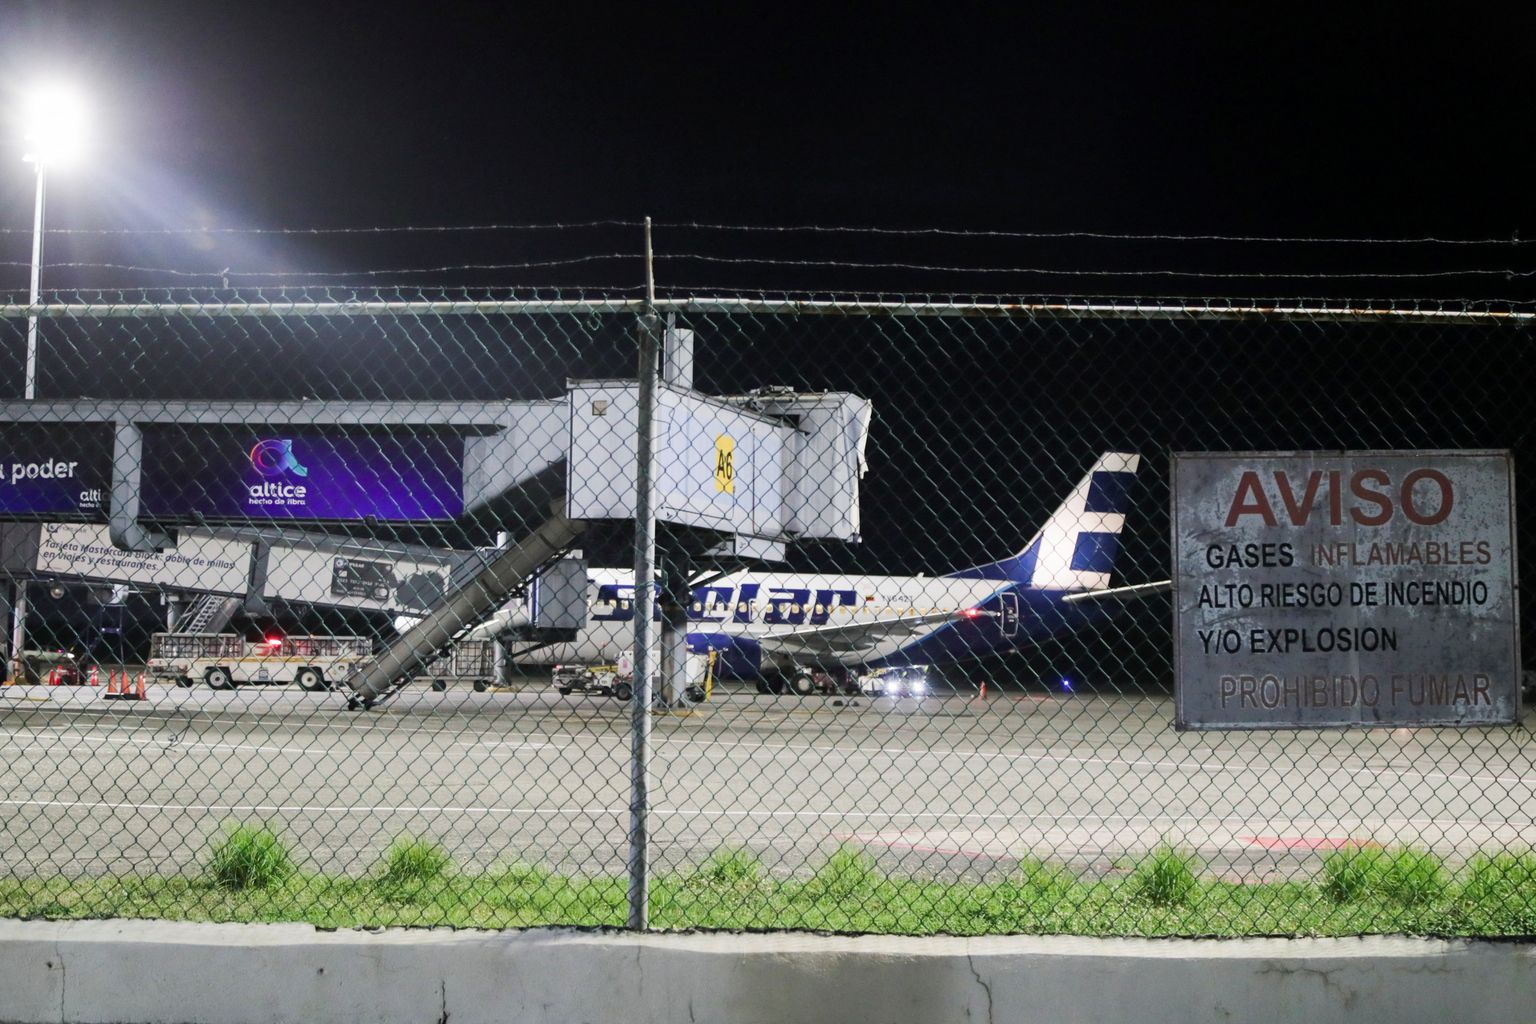 Dominikaani Vabariigi Santo Domingo Las Americase rahvusvahelise lennujaama lennuväli, kus leidis aset lennuõnnetus